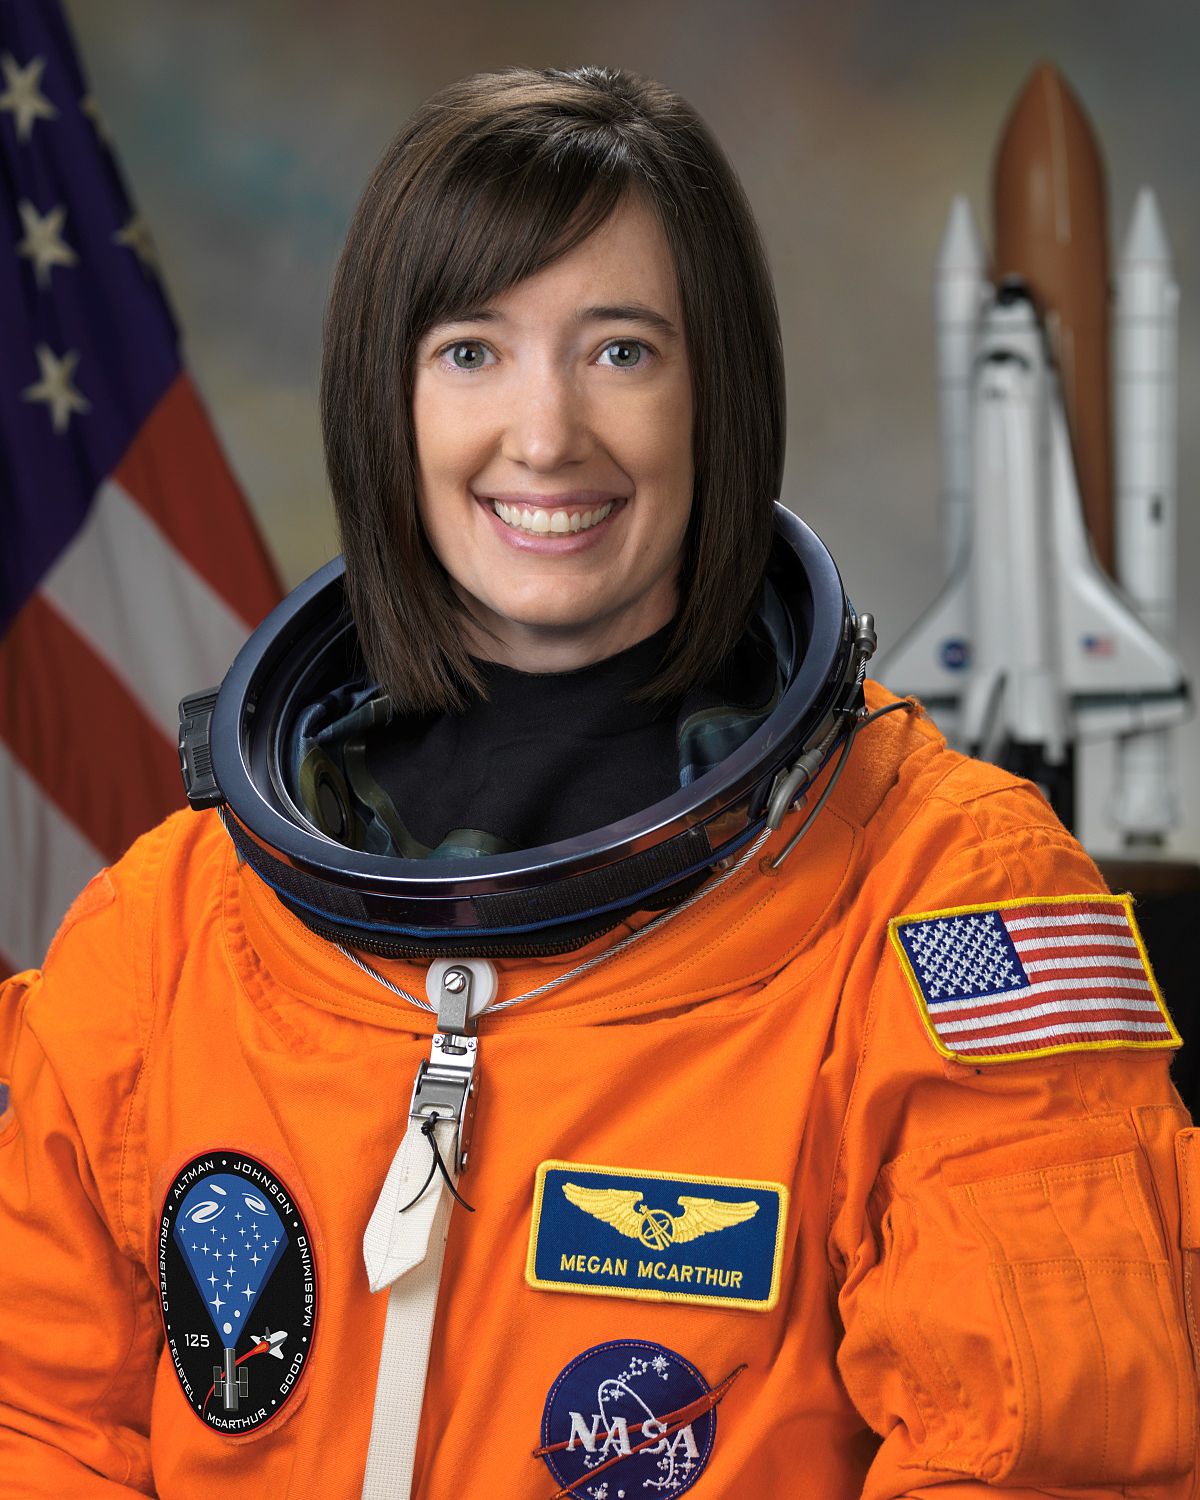 2021 में जाने वाले नासा के अगले स्पेसएक्स मिशन की पायलट होगी यह महिला अंतरिक्ष यात्री